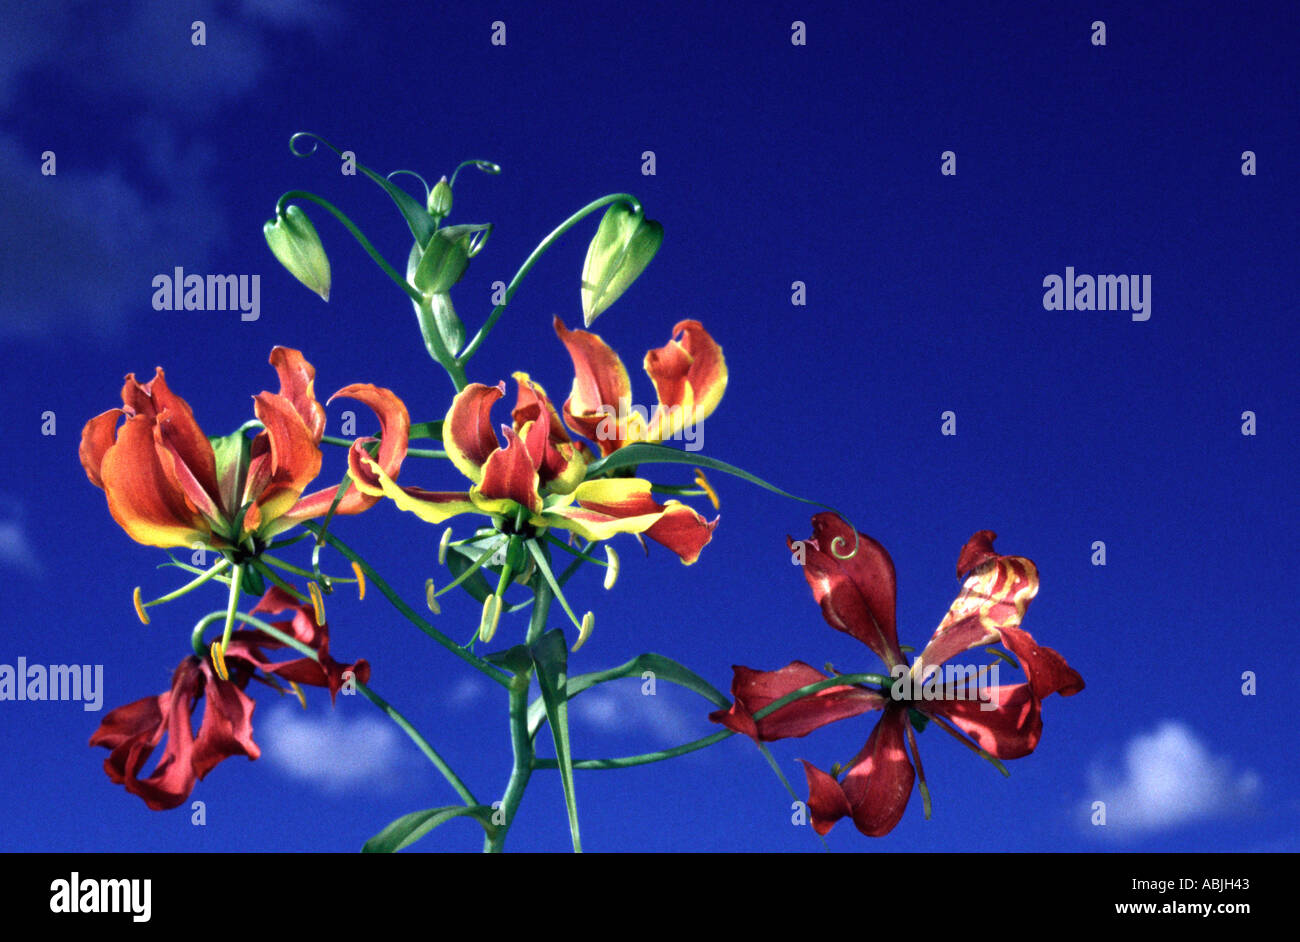 Flame Lily, Gloriosa superba Stock Photo